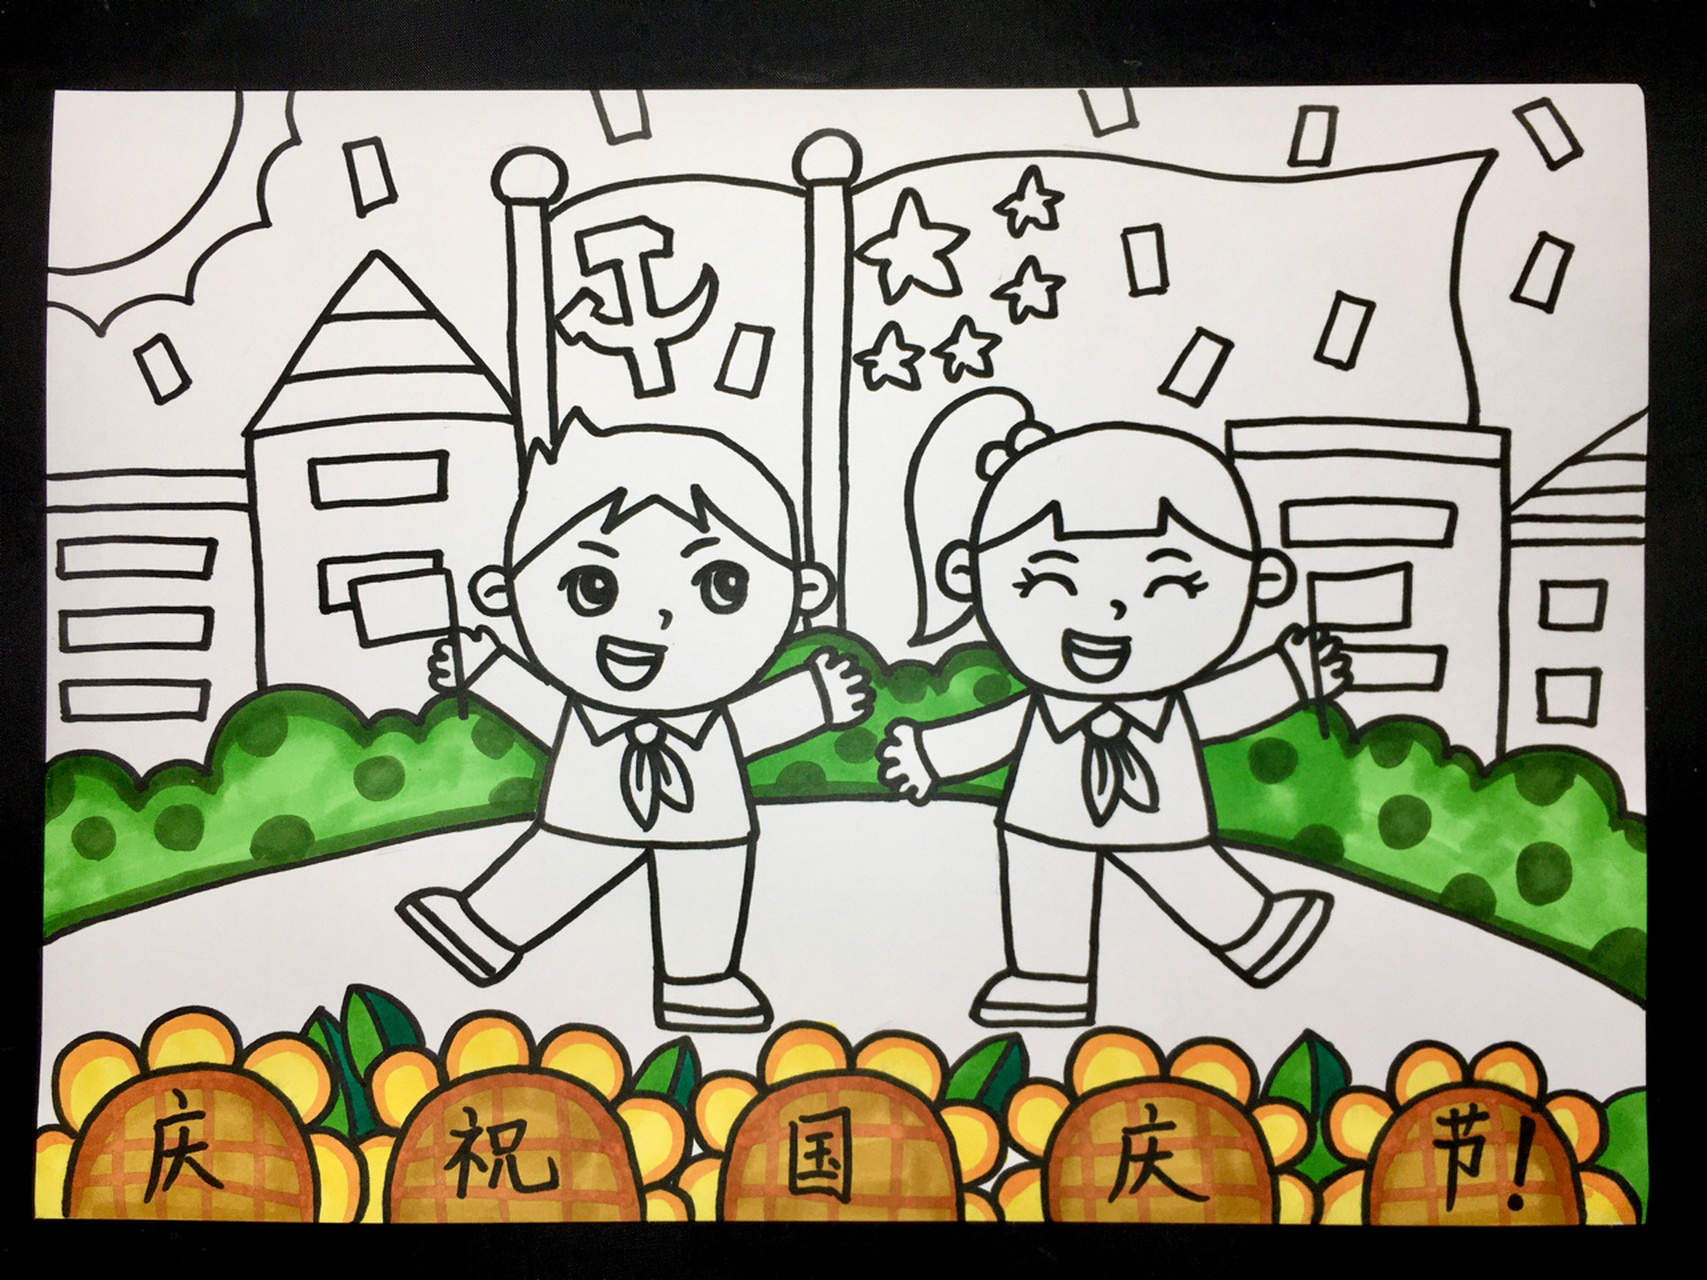 【庆祝国庆节9899】马克笔儿童画卡通画小学 国庆节快到啦!